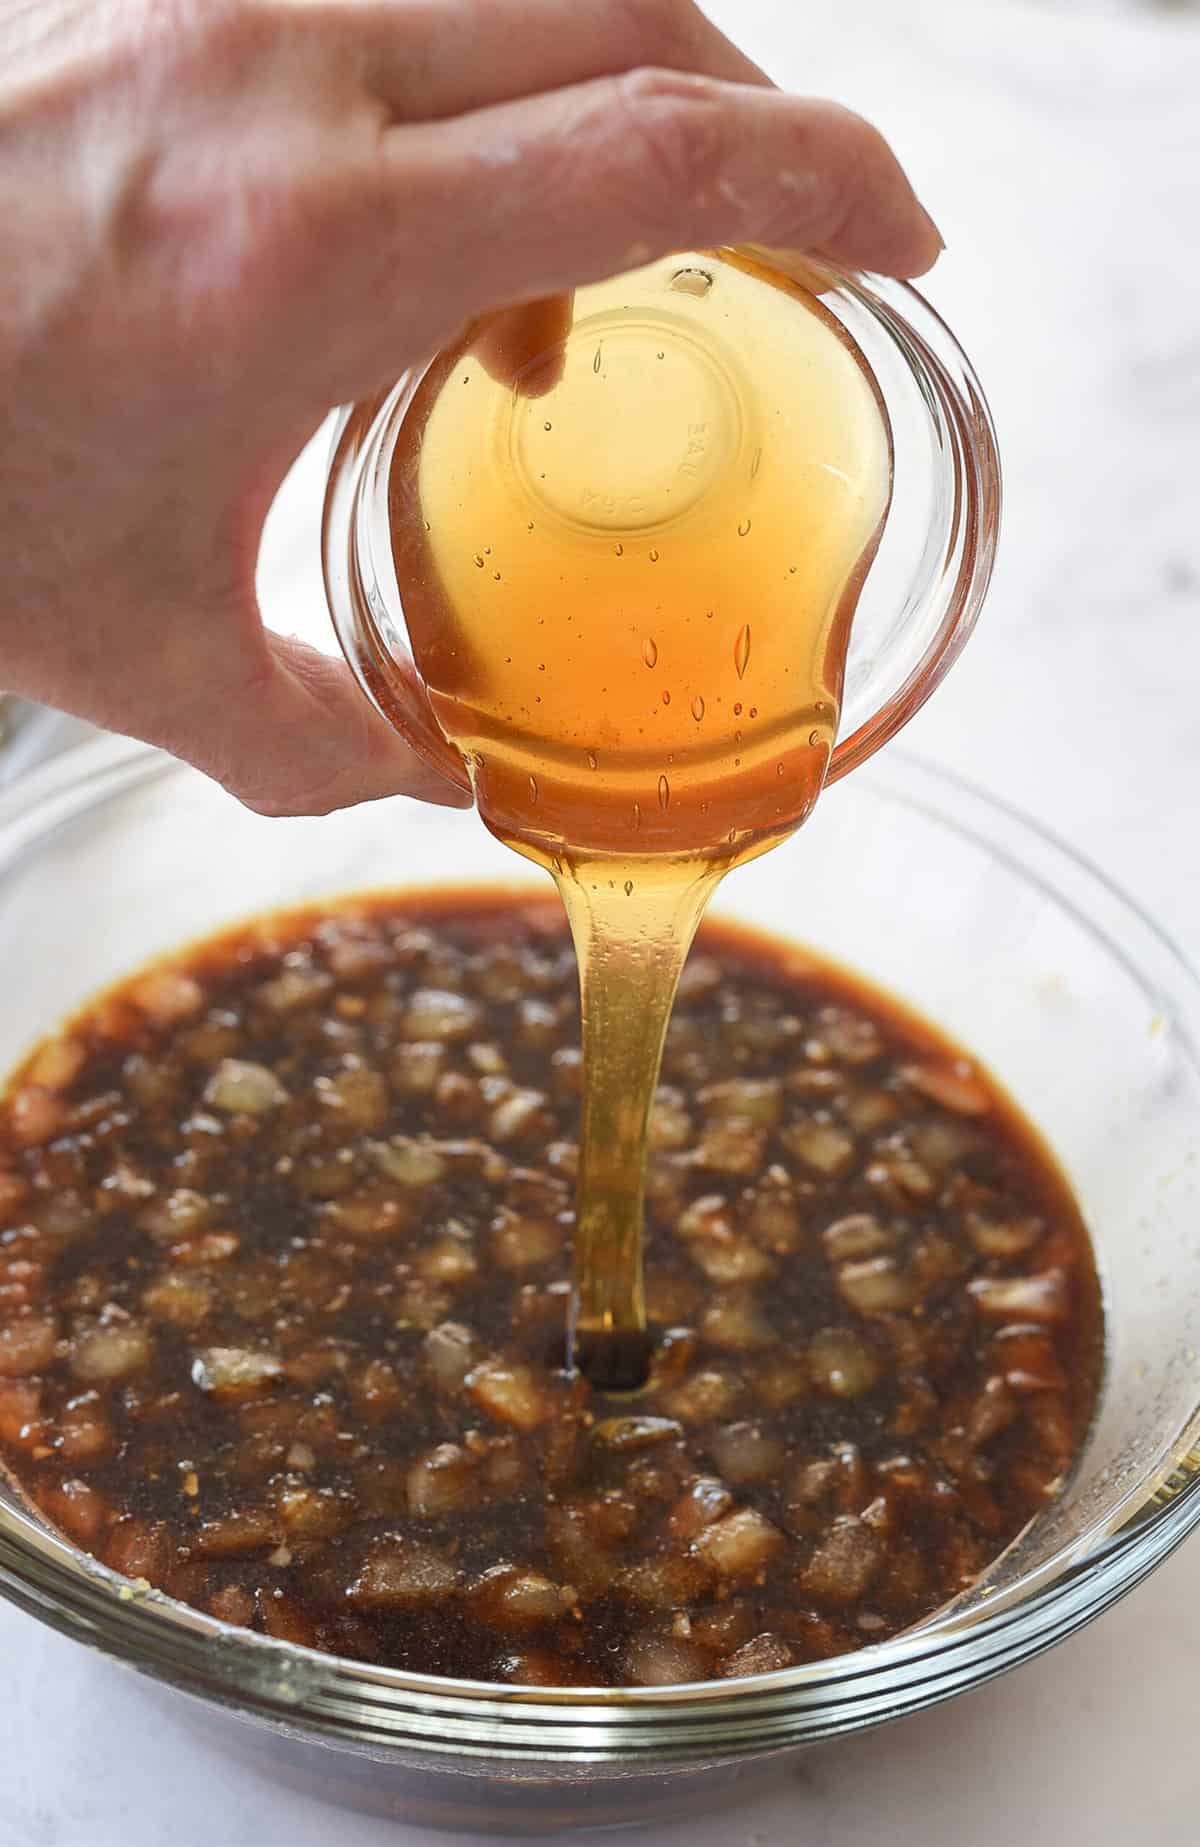 Pouring honey into a bowl